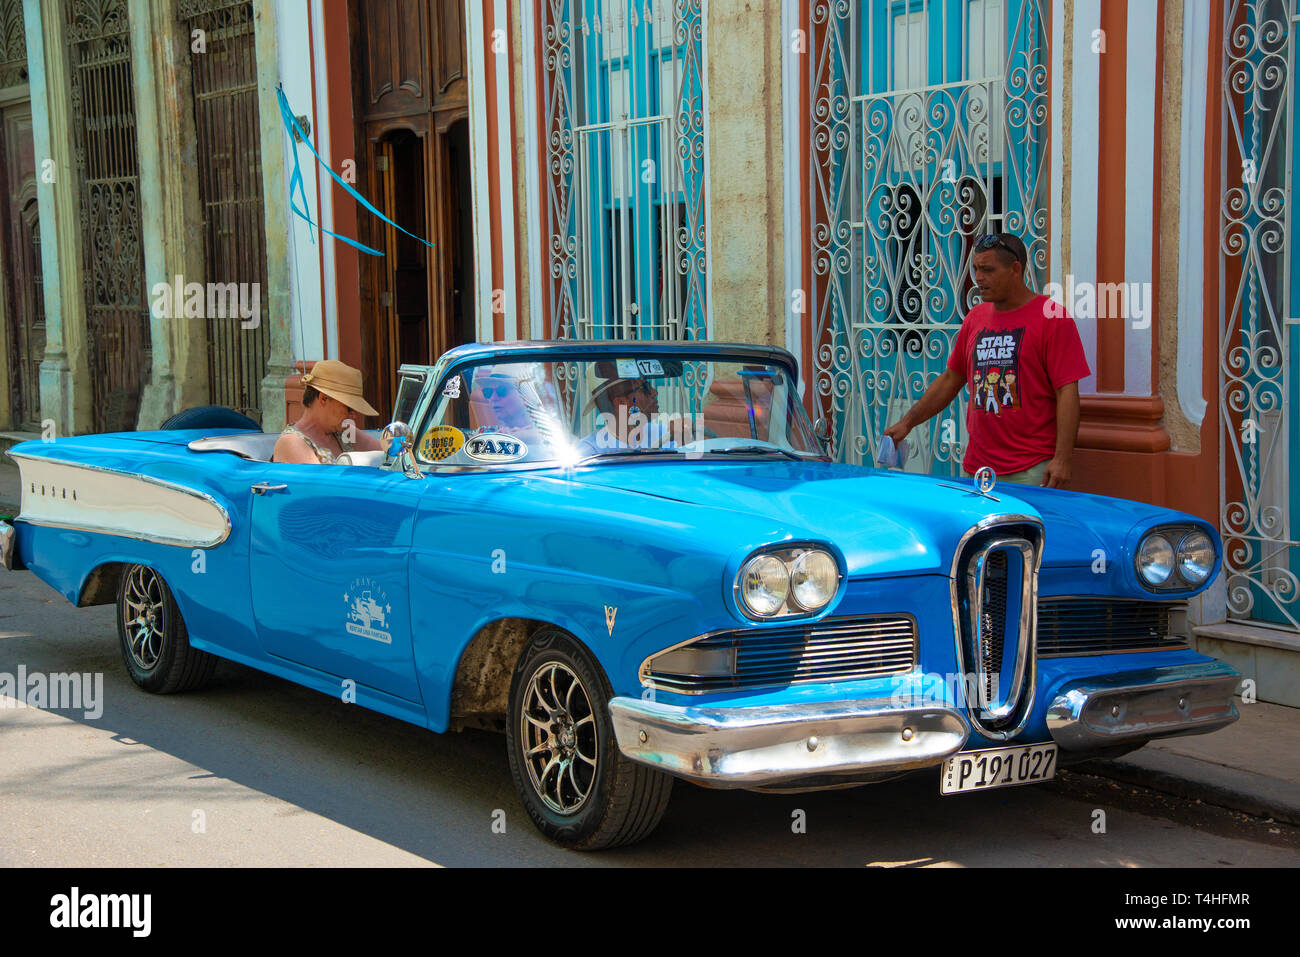 Bunte blau Classic American Auto sammeln die Passagiere auf den Straßen der Altstadt oder Havanna Vieja Havanna, Kuba, Karibik Stockfoto